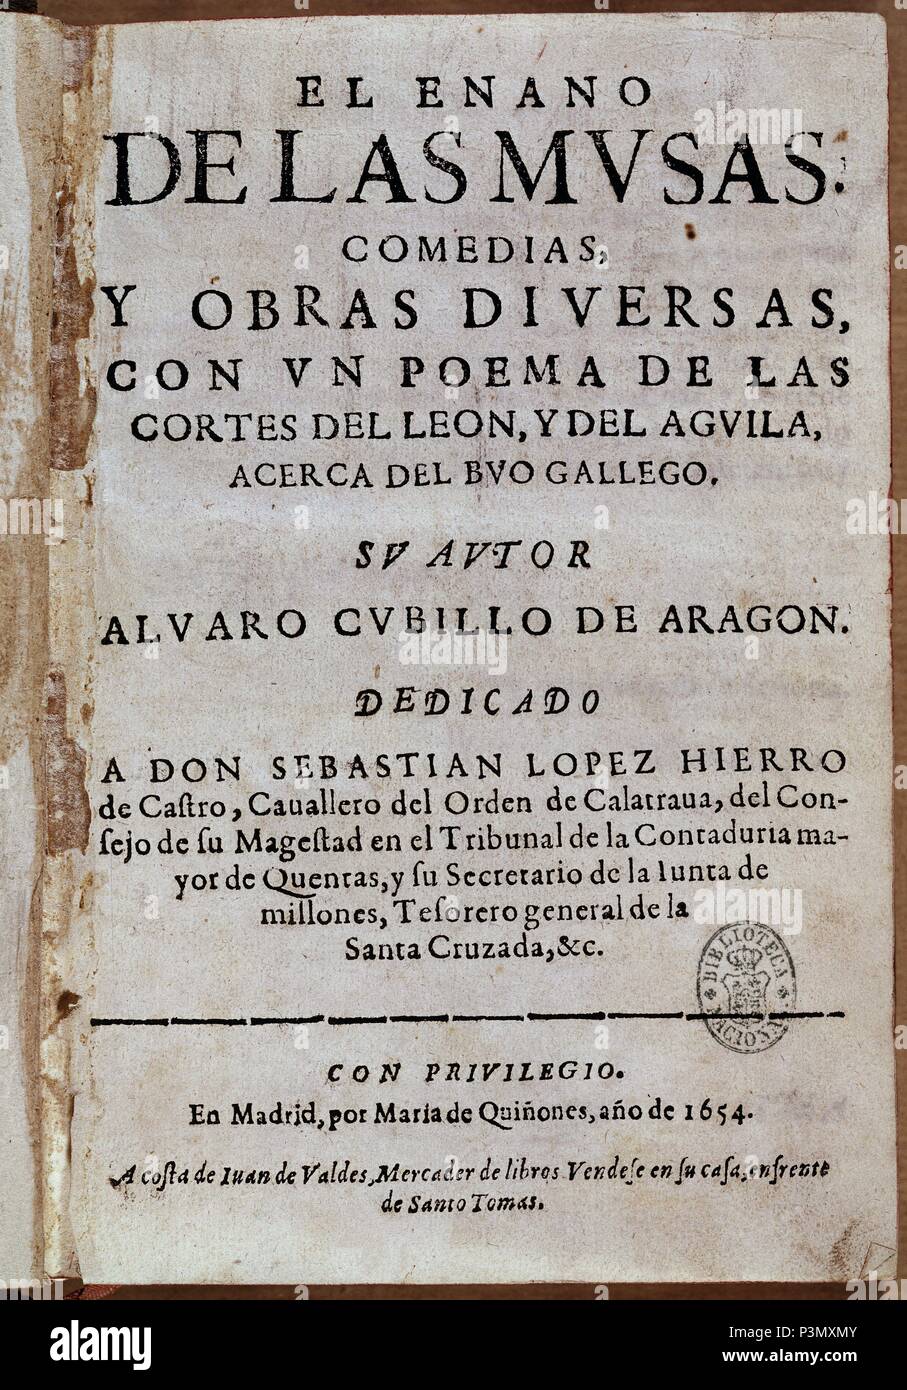 EL ENANO DE LAS MUSAS. Author: CUBILLO ALVARO. Location: BIBLIOTECA NACIONAL-COLECCION, MADRID, SPAIN. Stock Photo